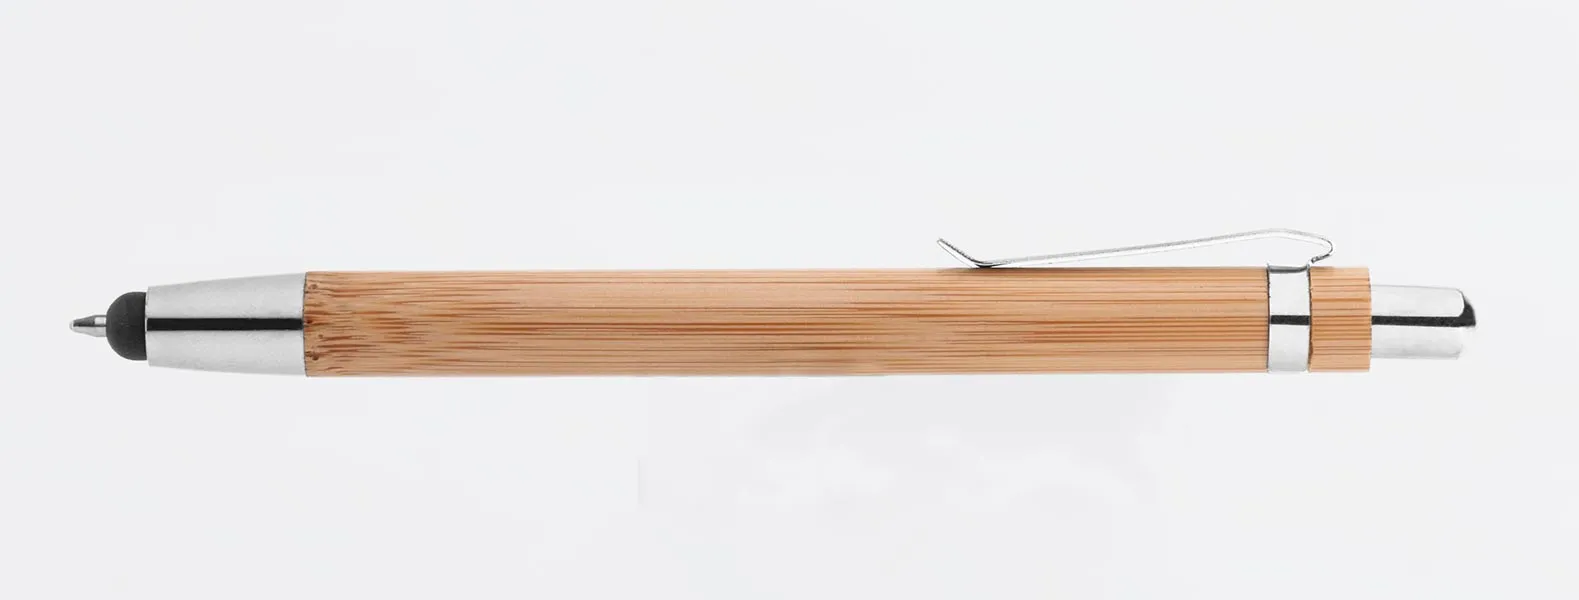 Caneta esferografica em bambu com ponta touch. Possui detalhes em plástico e ferro cromado; carga esferográfica azul, acionada com um click.